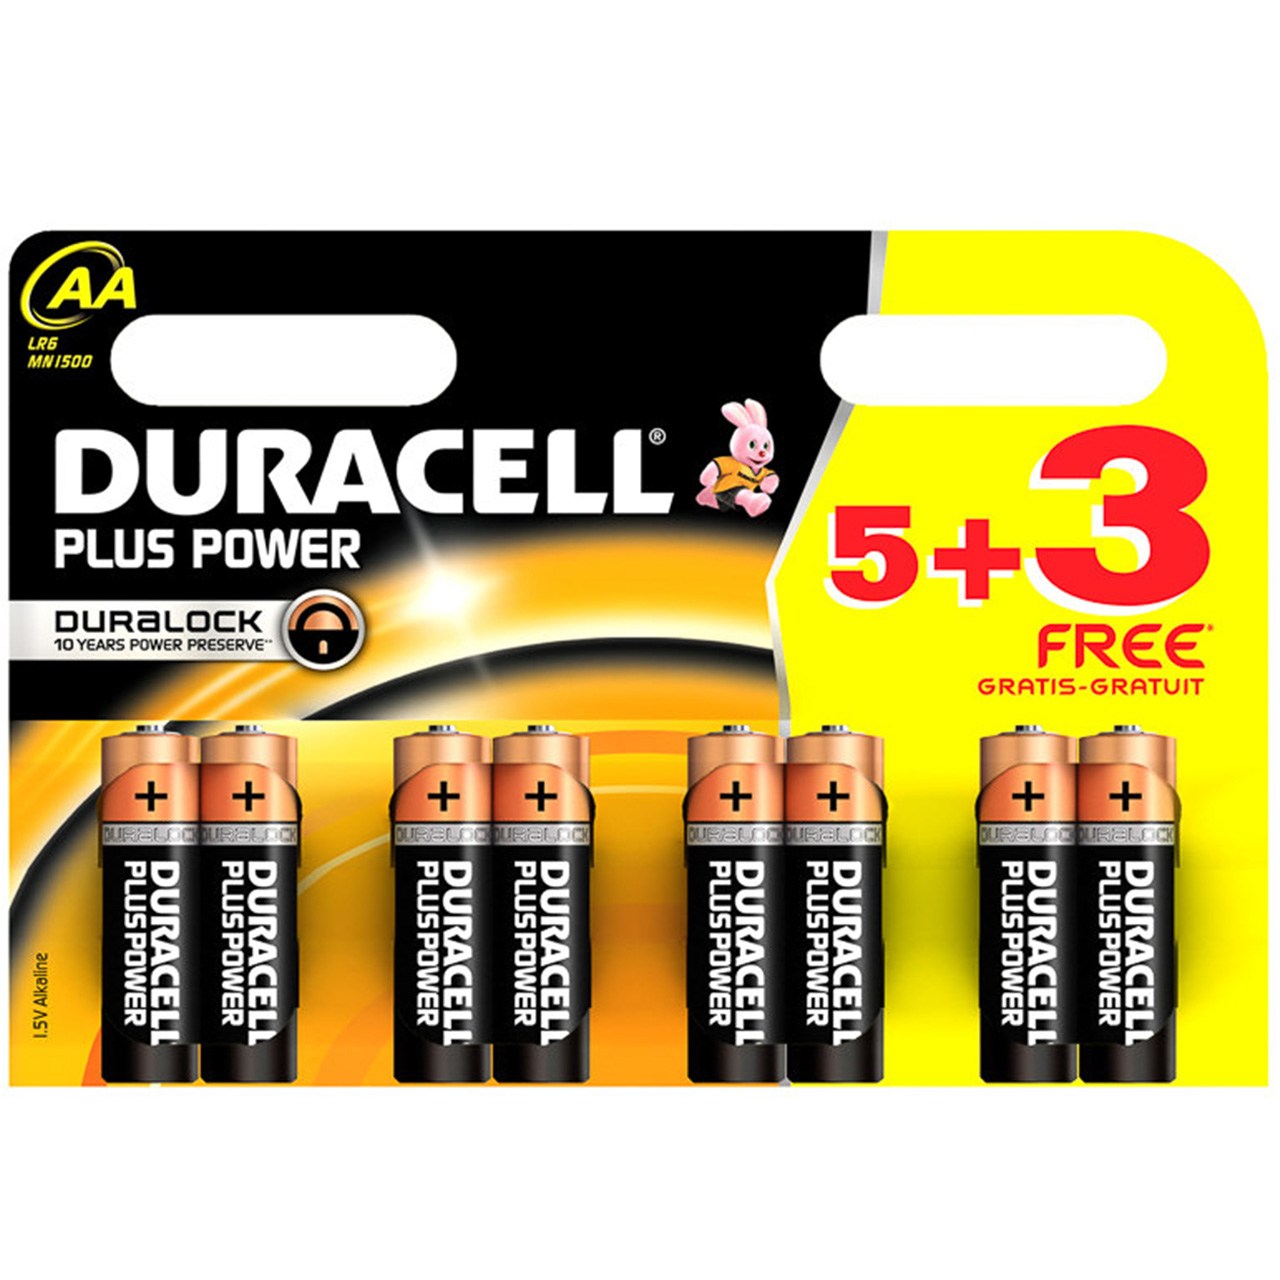 باتری قلمی دوراسل مدل Plus Power Duralock بسته 5 + 3 عددی